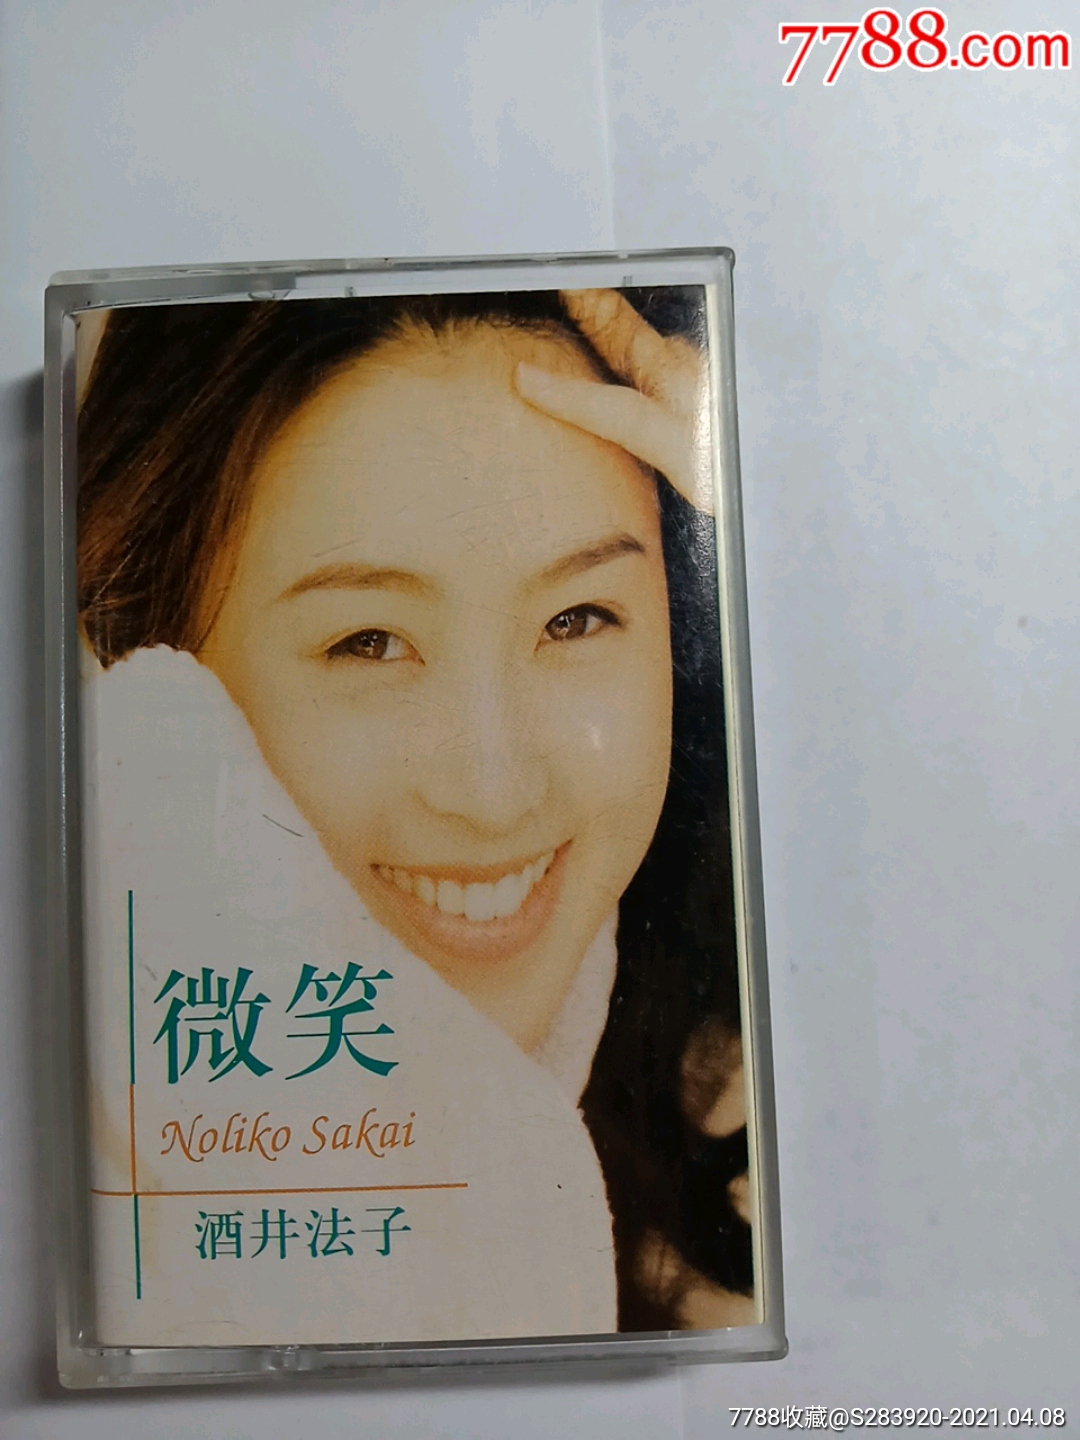 磁带:酒井法子微笑